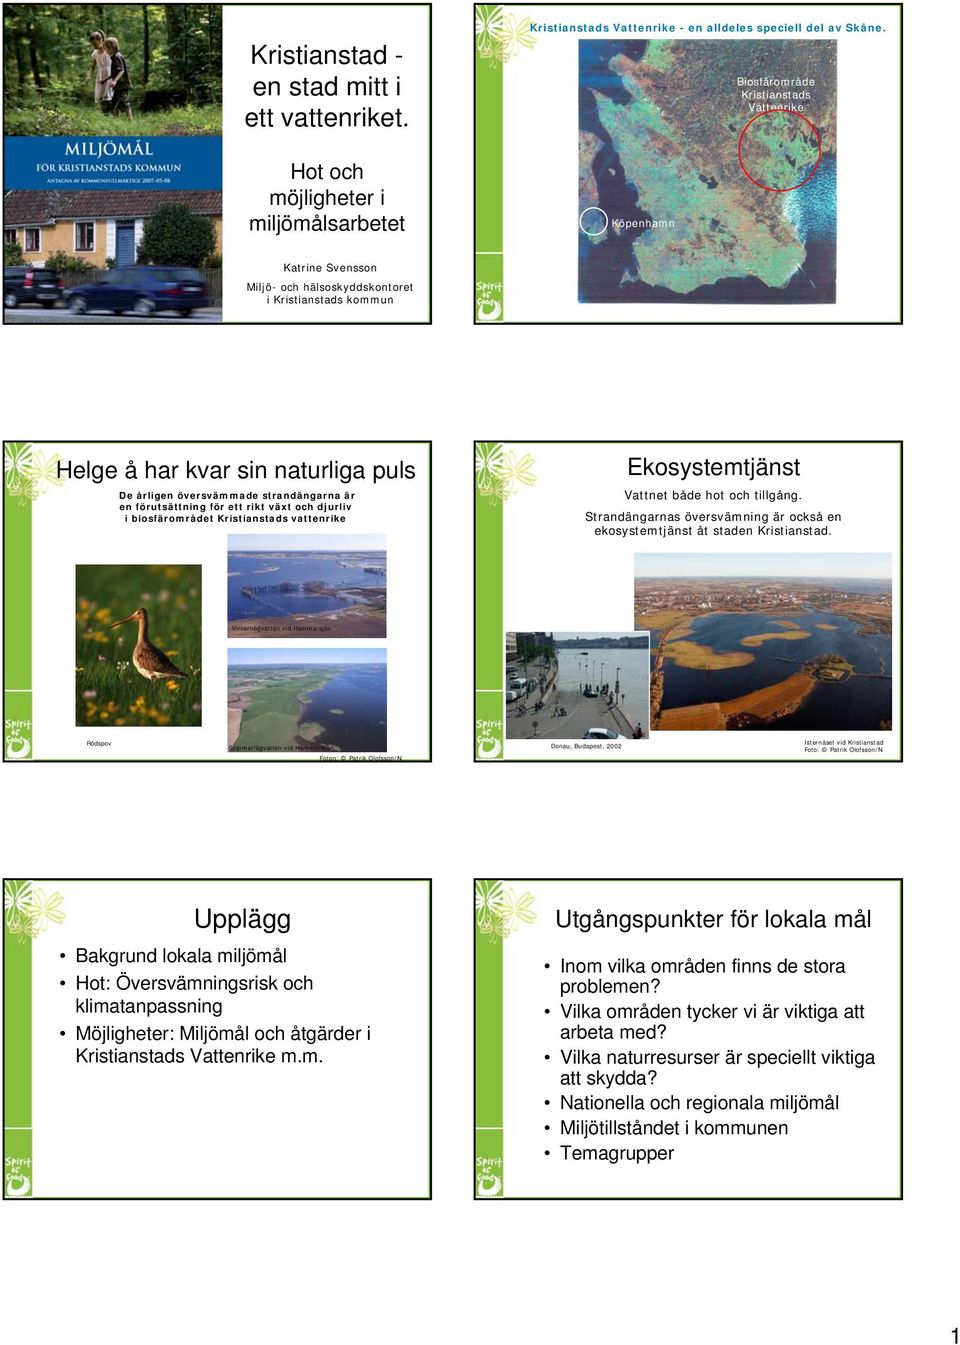 förutsättning för ett rikt växt och djurliv i biosfärområdet Kristianstads vattenrike Ekosystemtjänst Vattnet både hot och tillgång.